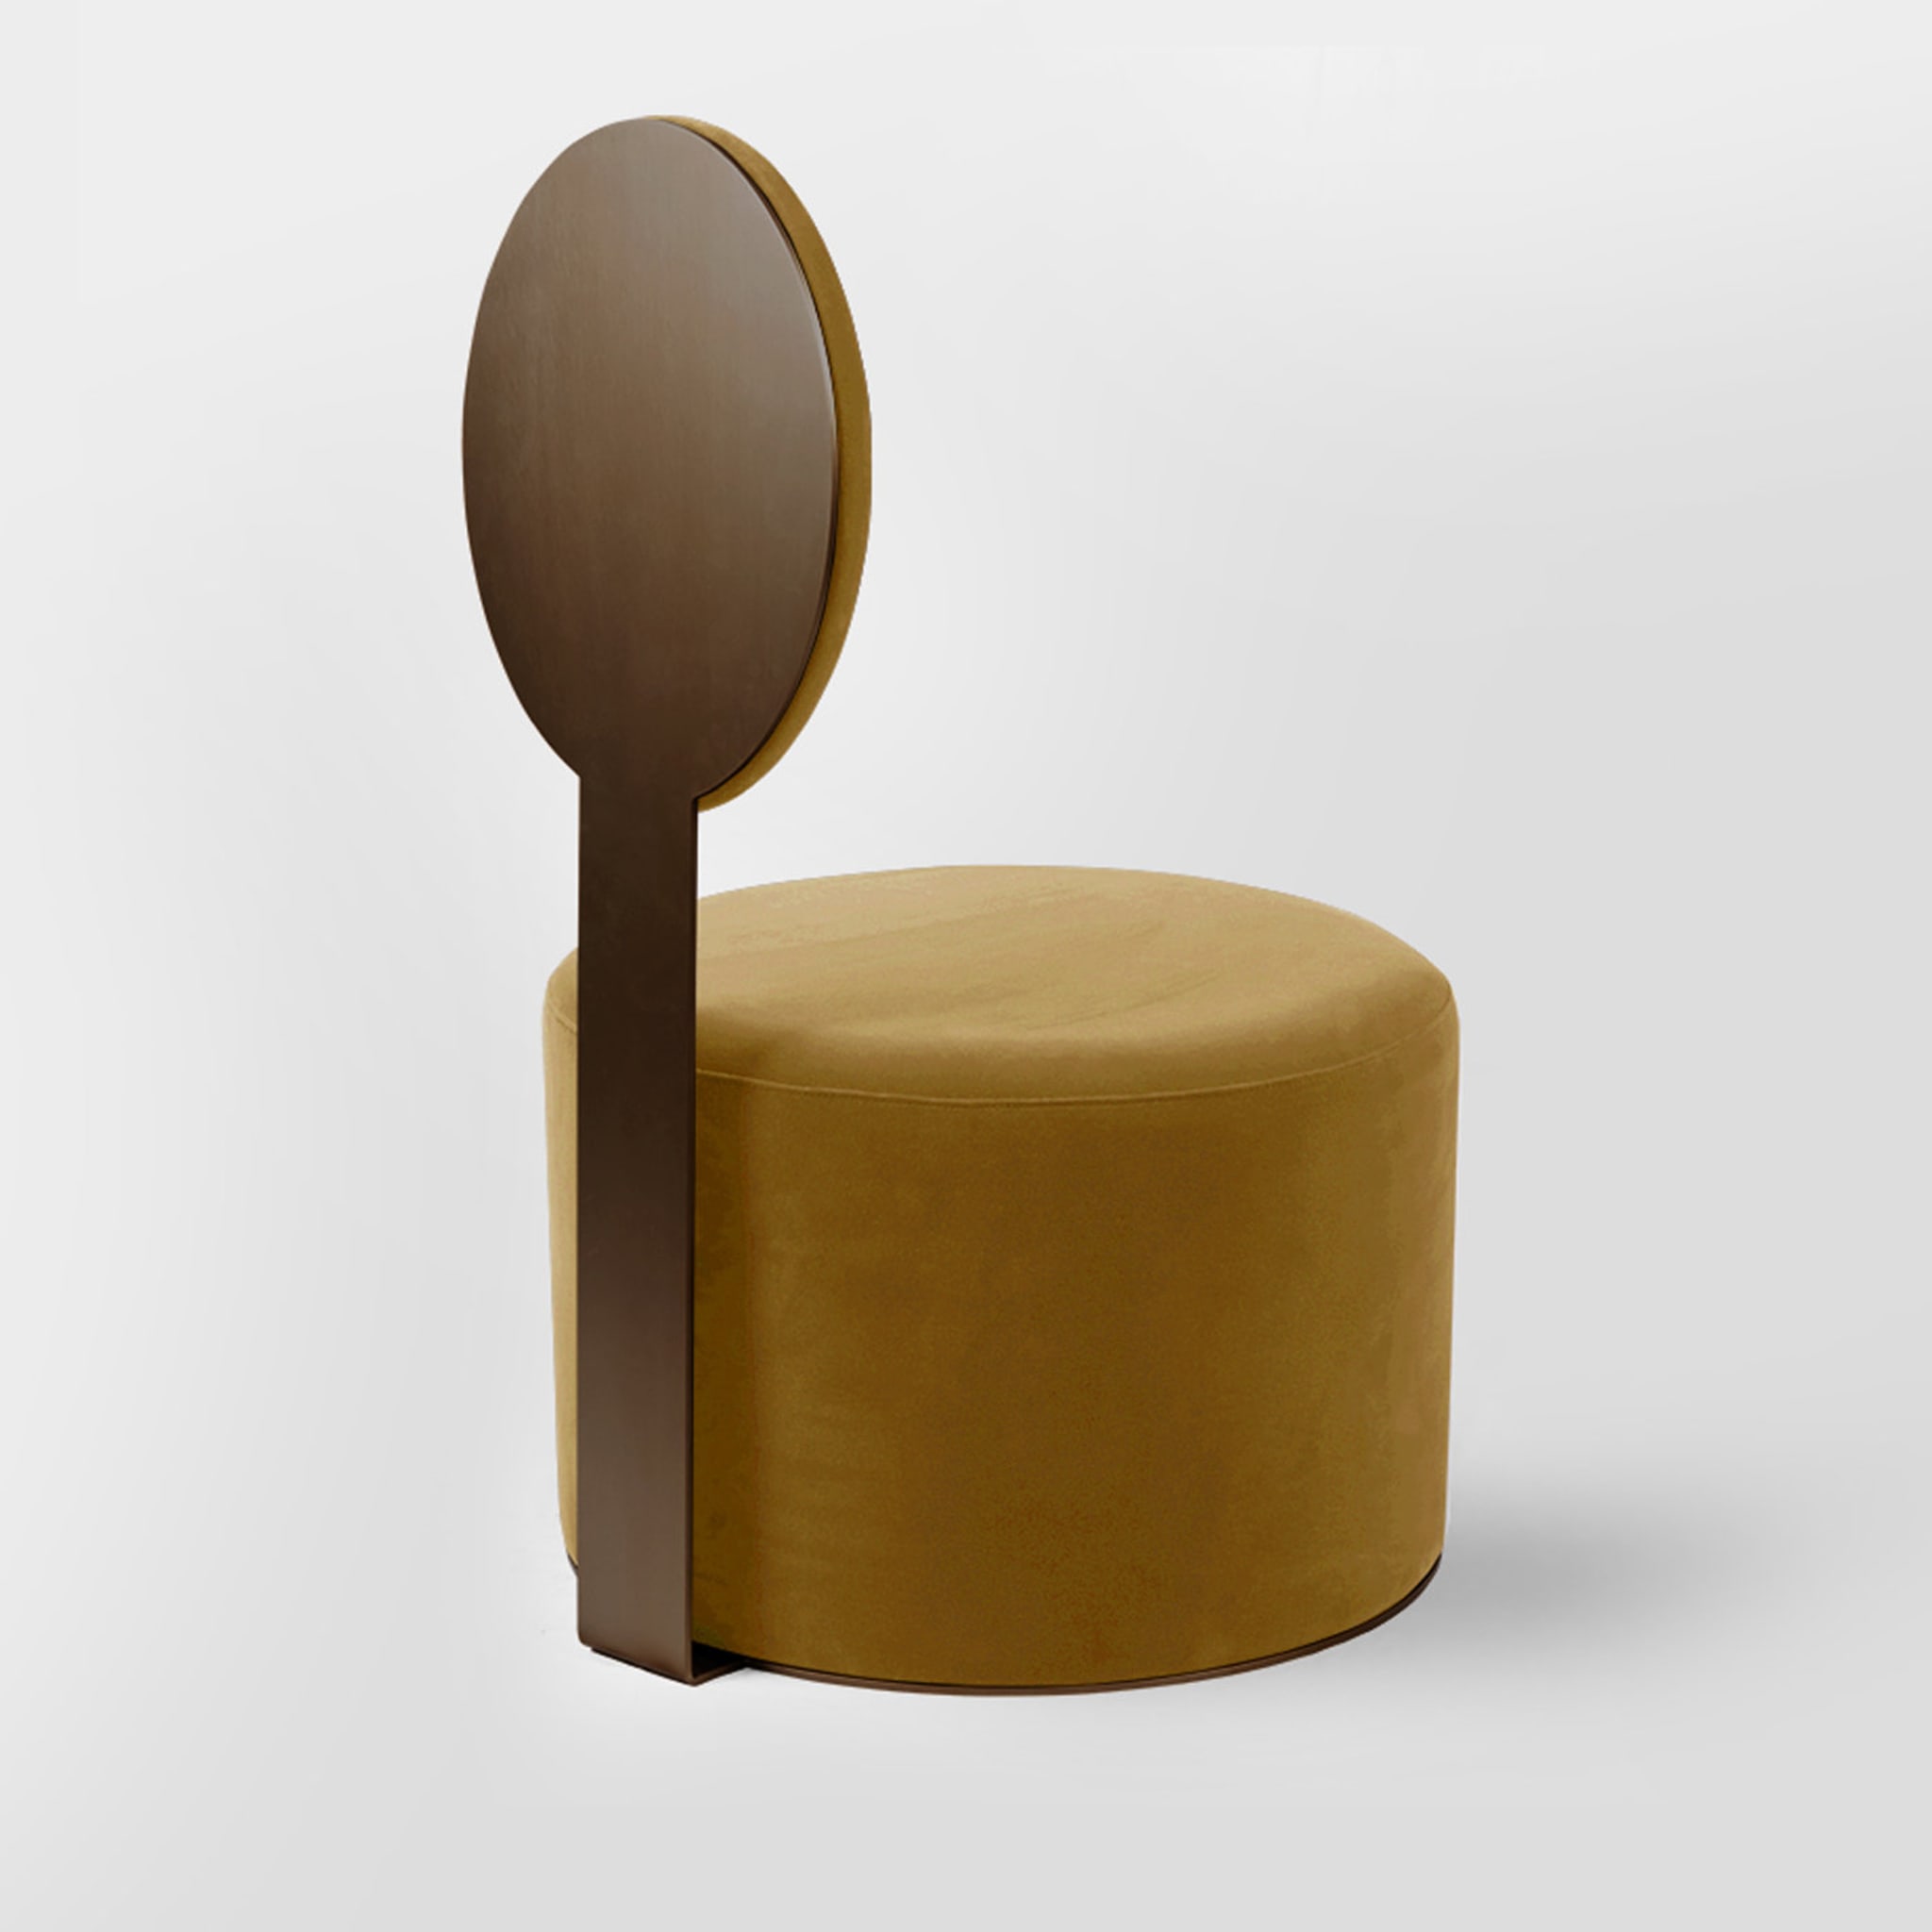 Pop Ocher Chair by Artefatto Design Studio - Alternative view 2